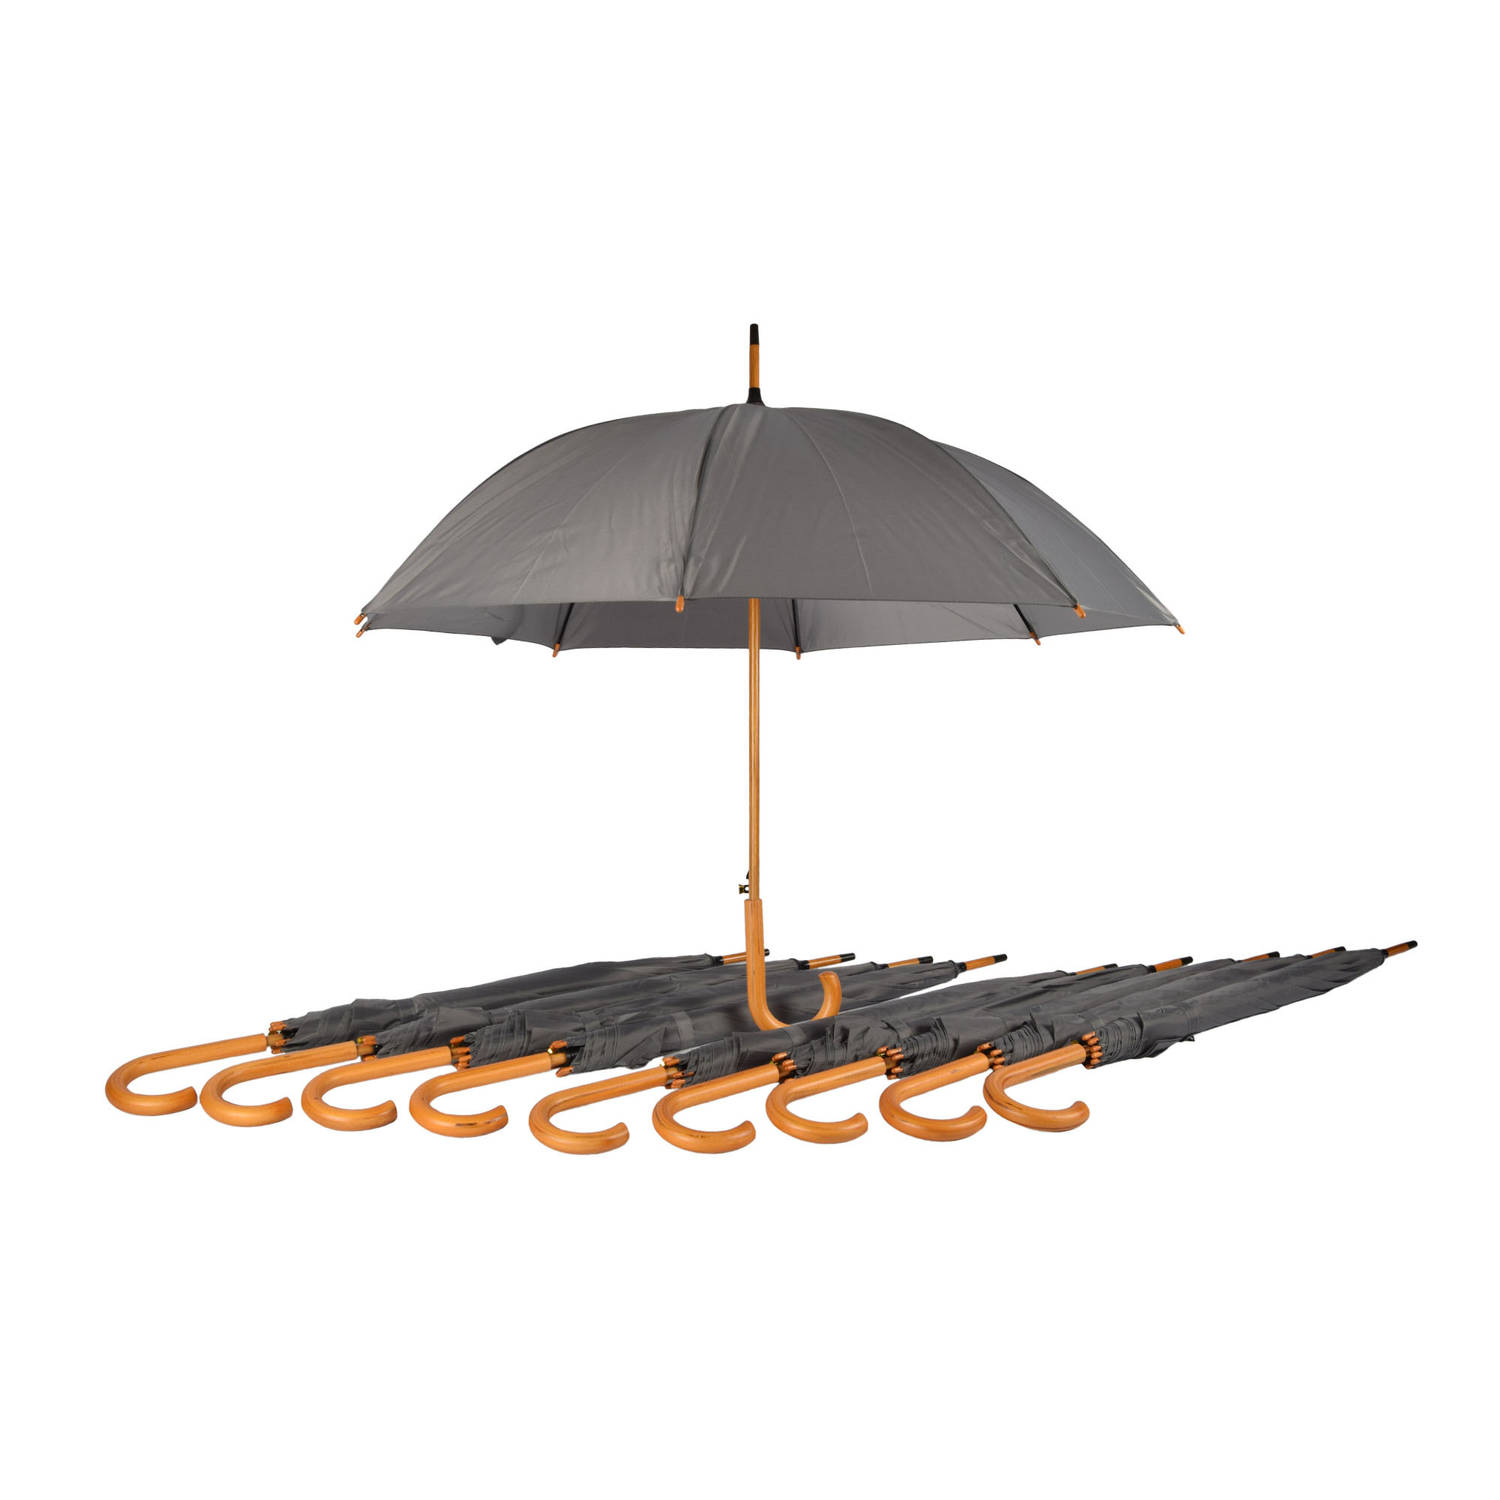 Voordelpak: Set van 10 Grijze Opvouwbare Paraplu's met Houten Handvat - Voor Heren en Dames| 98cm Diameter | Windproof & Automatisch